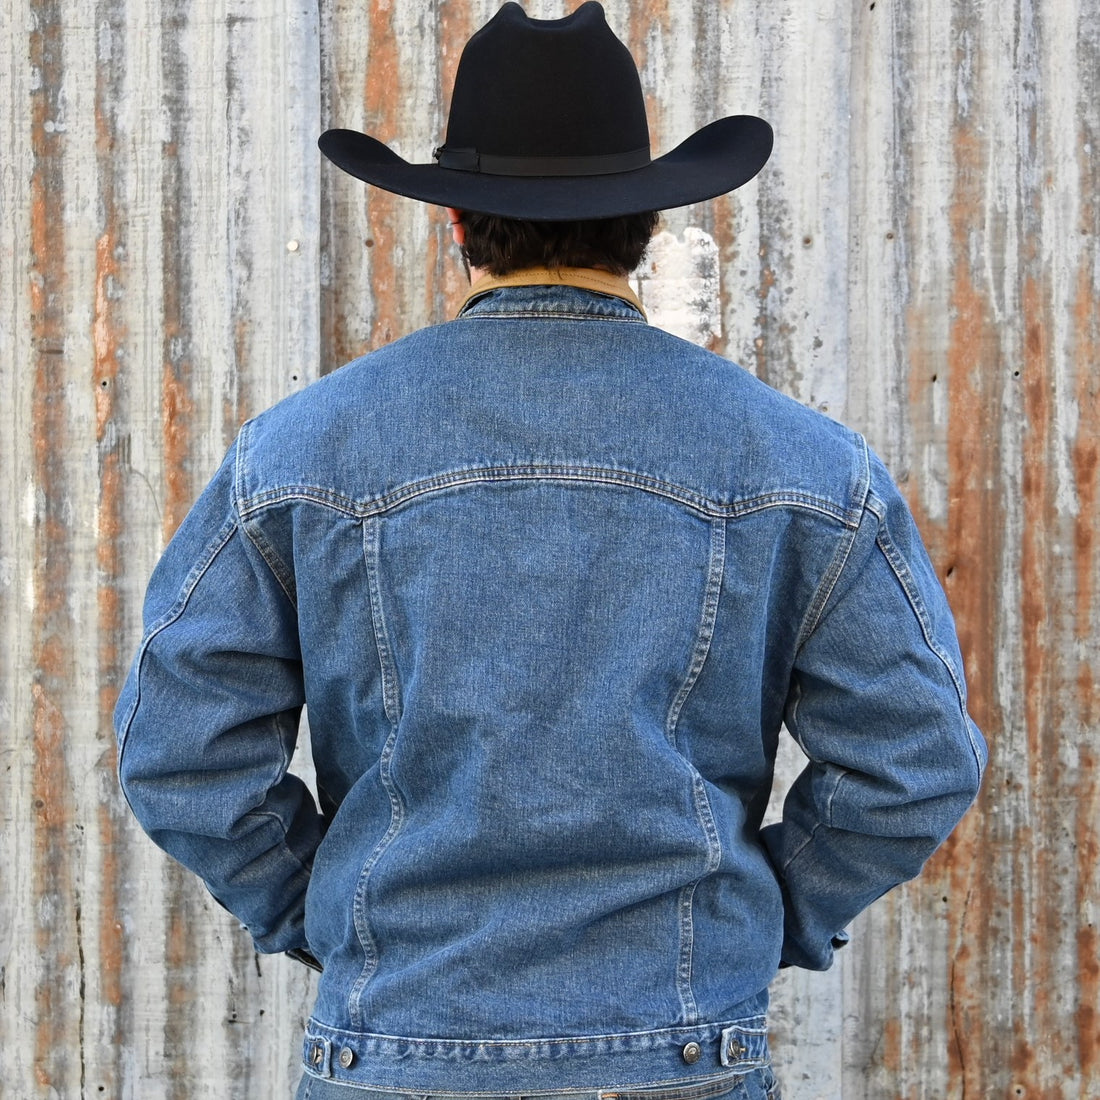 Schaefer Legend Unlined Denim Jacket view of back